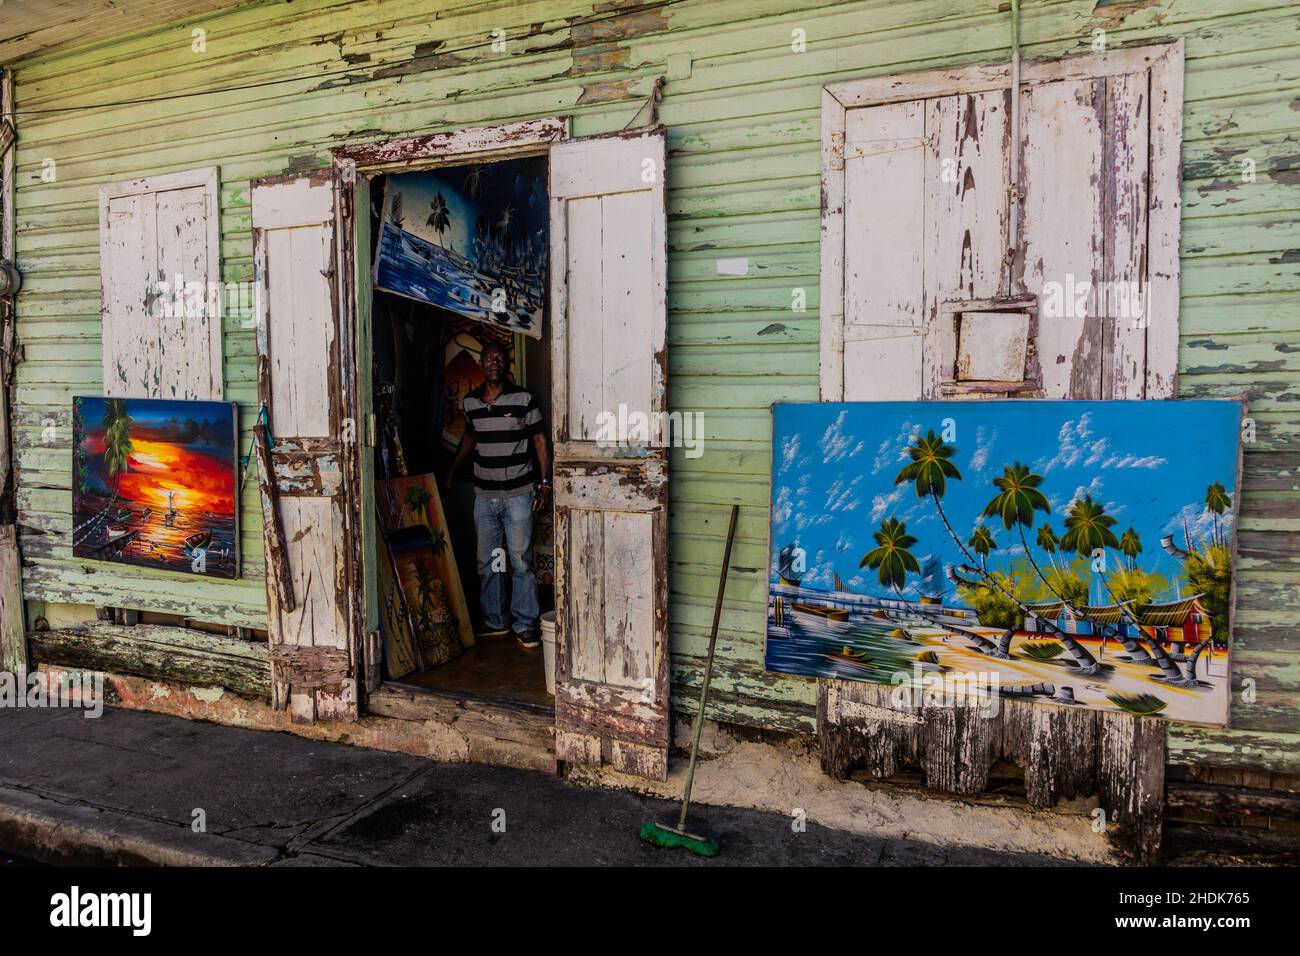 PUERTO PLATA, REPÚBLICA DOMINICANA - 13 DE DICIEMBRE de 2018: Casa desmoronada de un pintor en el centro de Puerto Plata, República Dominicana Foto de stock